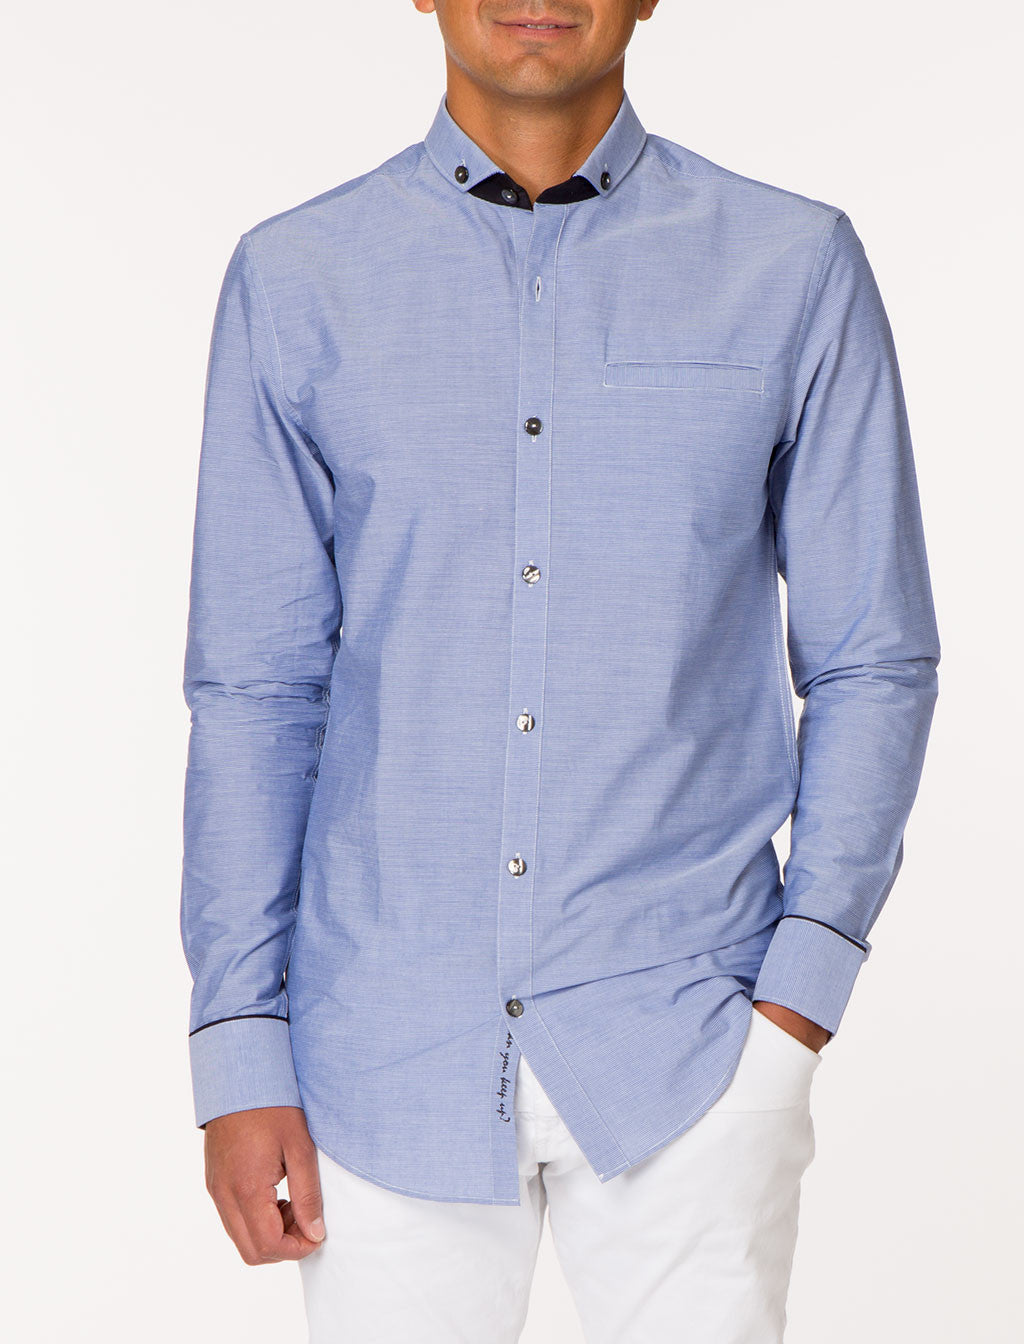 OGAAN Long Sleeve Buttoned Collar Shirt | Tops | Shop | 227 World